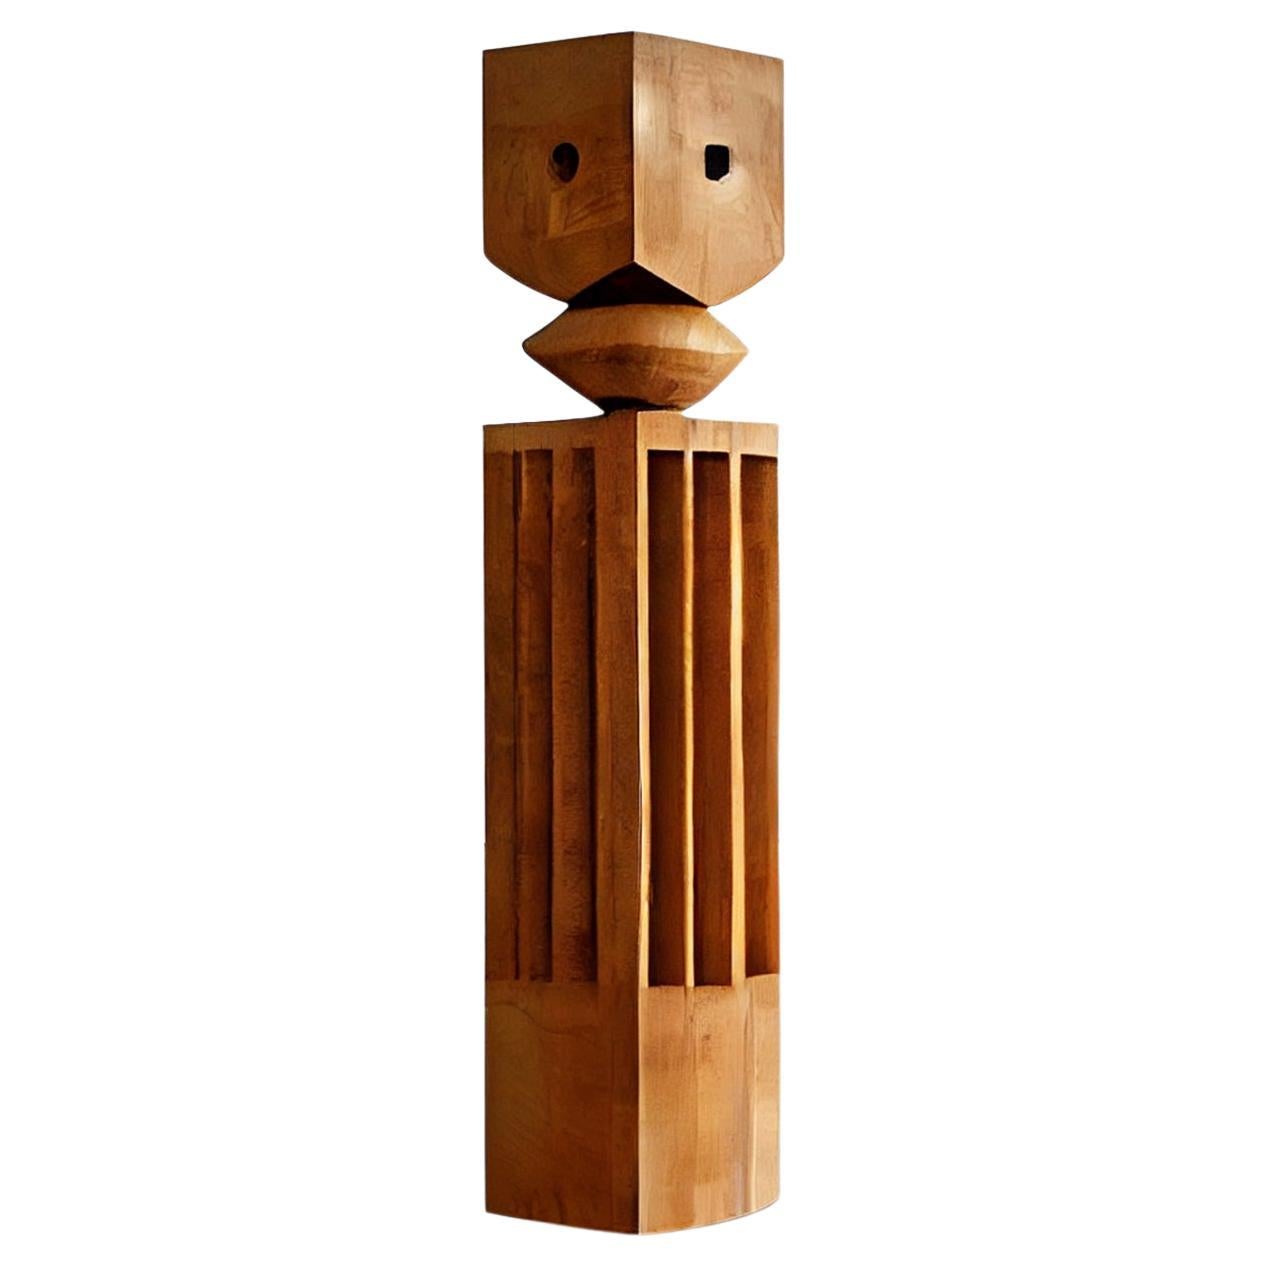 Figurative Holzskulptur, inspiriert von Constantin Brancusi-Kunst, 3 Könige von Nono C